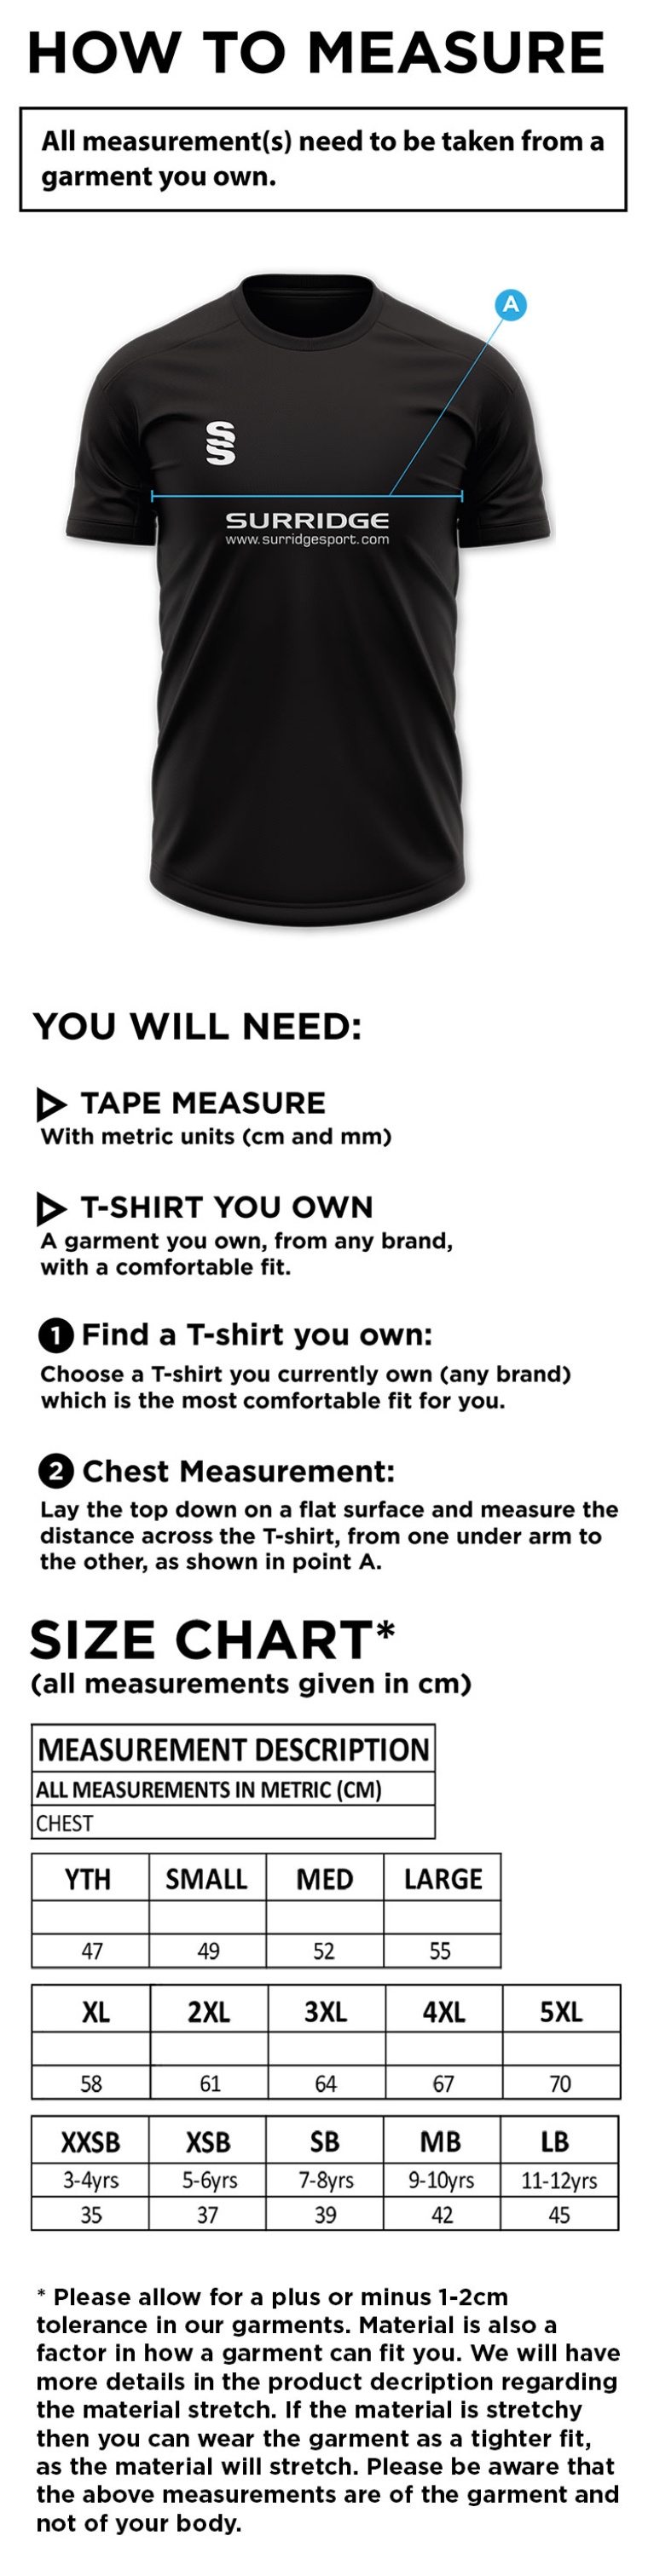 Penrith CC - Blade Polo Shirt - Size Guide